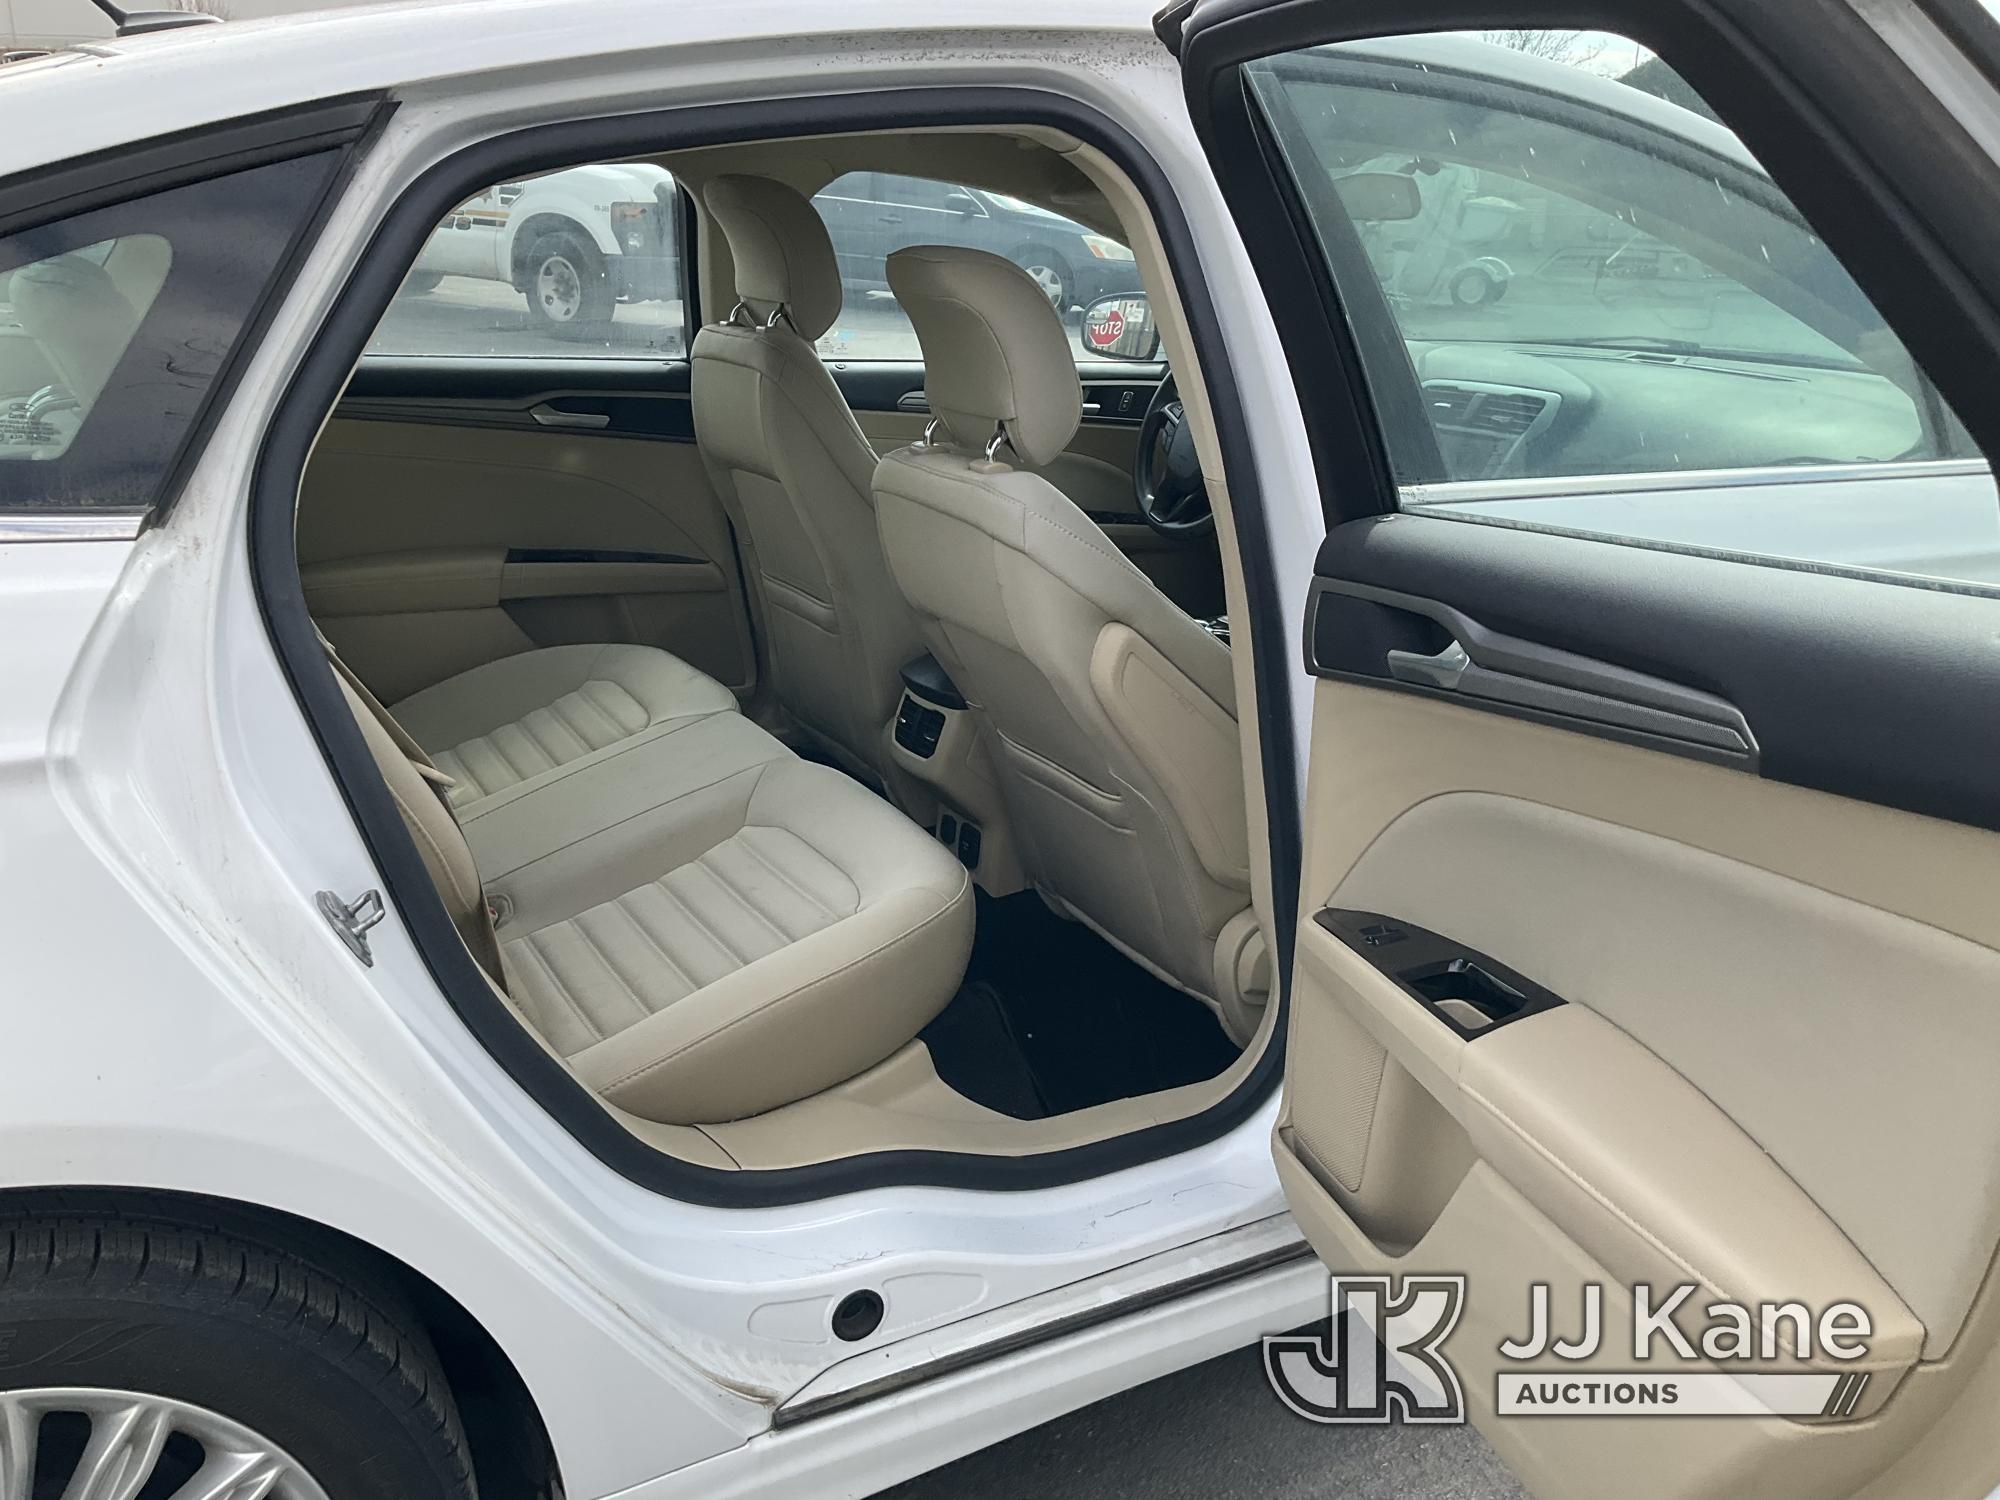 (Jurupa Valley, CA) 2014 Ford Fusion Hybrid 4-Door Sedan Runs & Moves, Missing Passenger Mirror, Ope